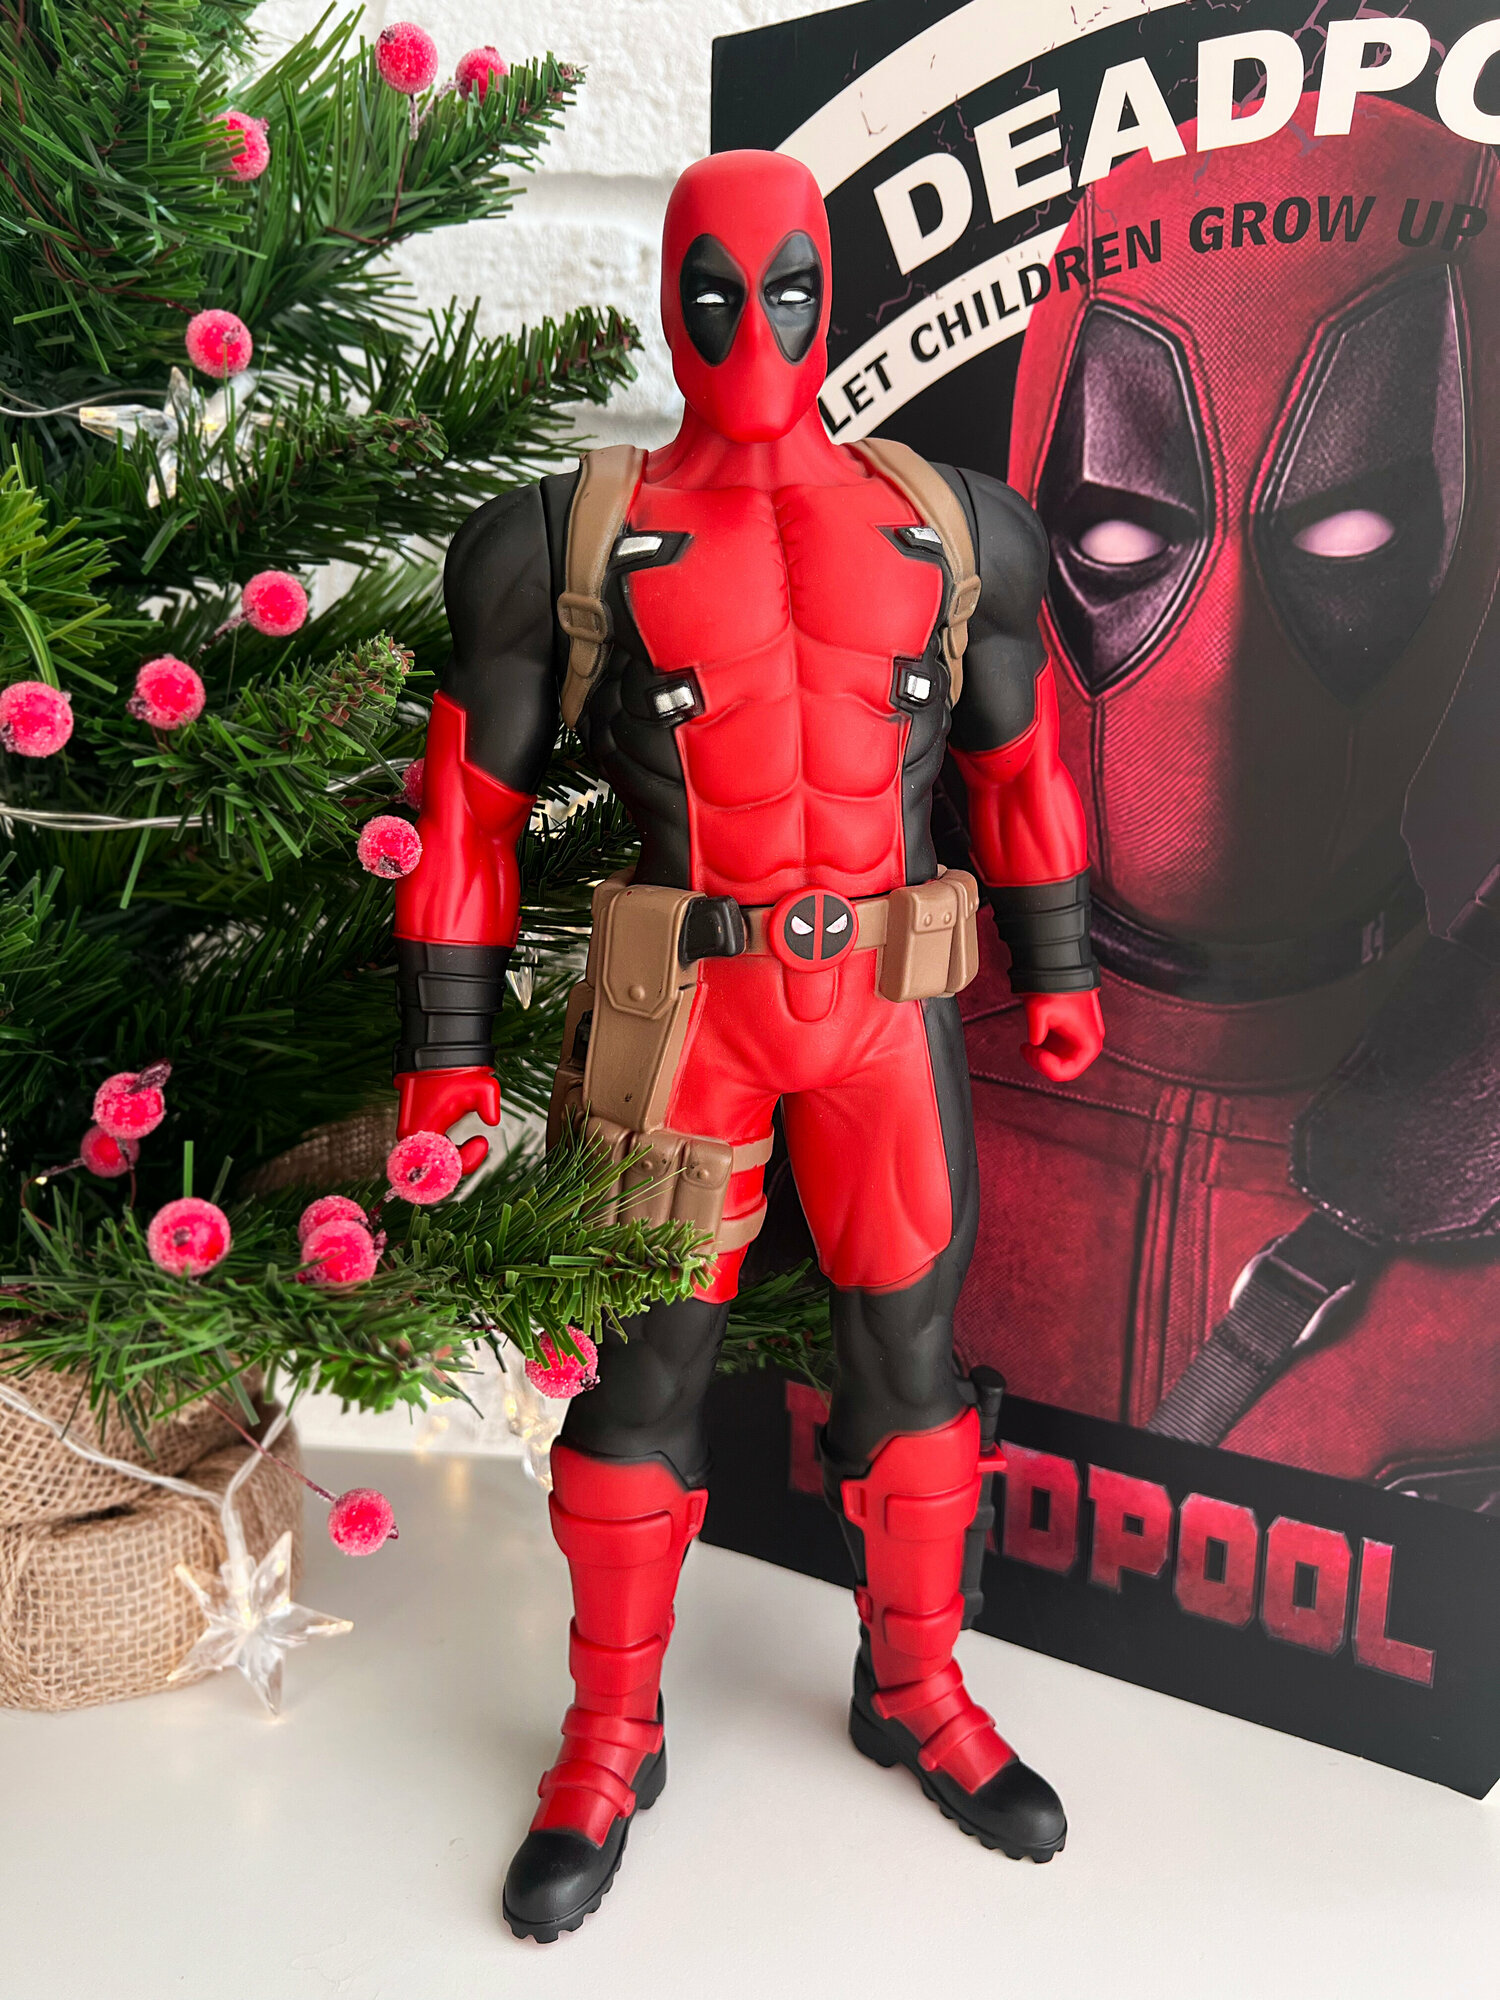 Фигурка супергерой Marvel - Дедпул (Deadpool), коллекционная игрушка для детей и взрослых, 33 см.